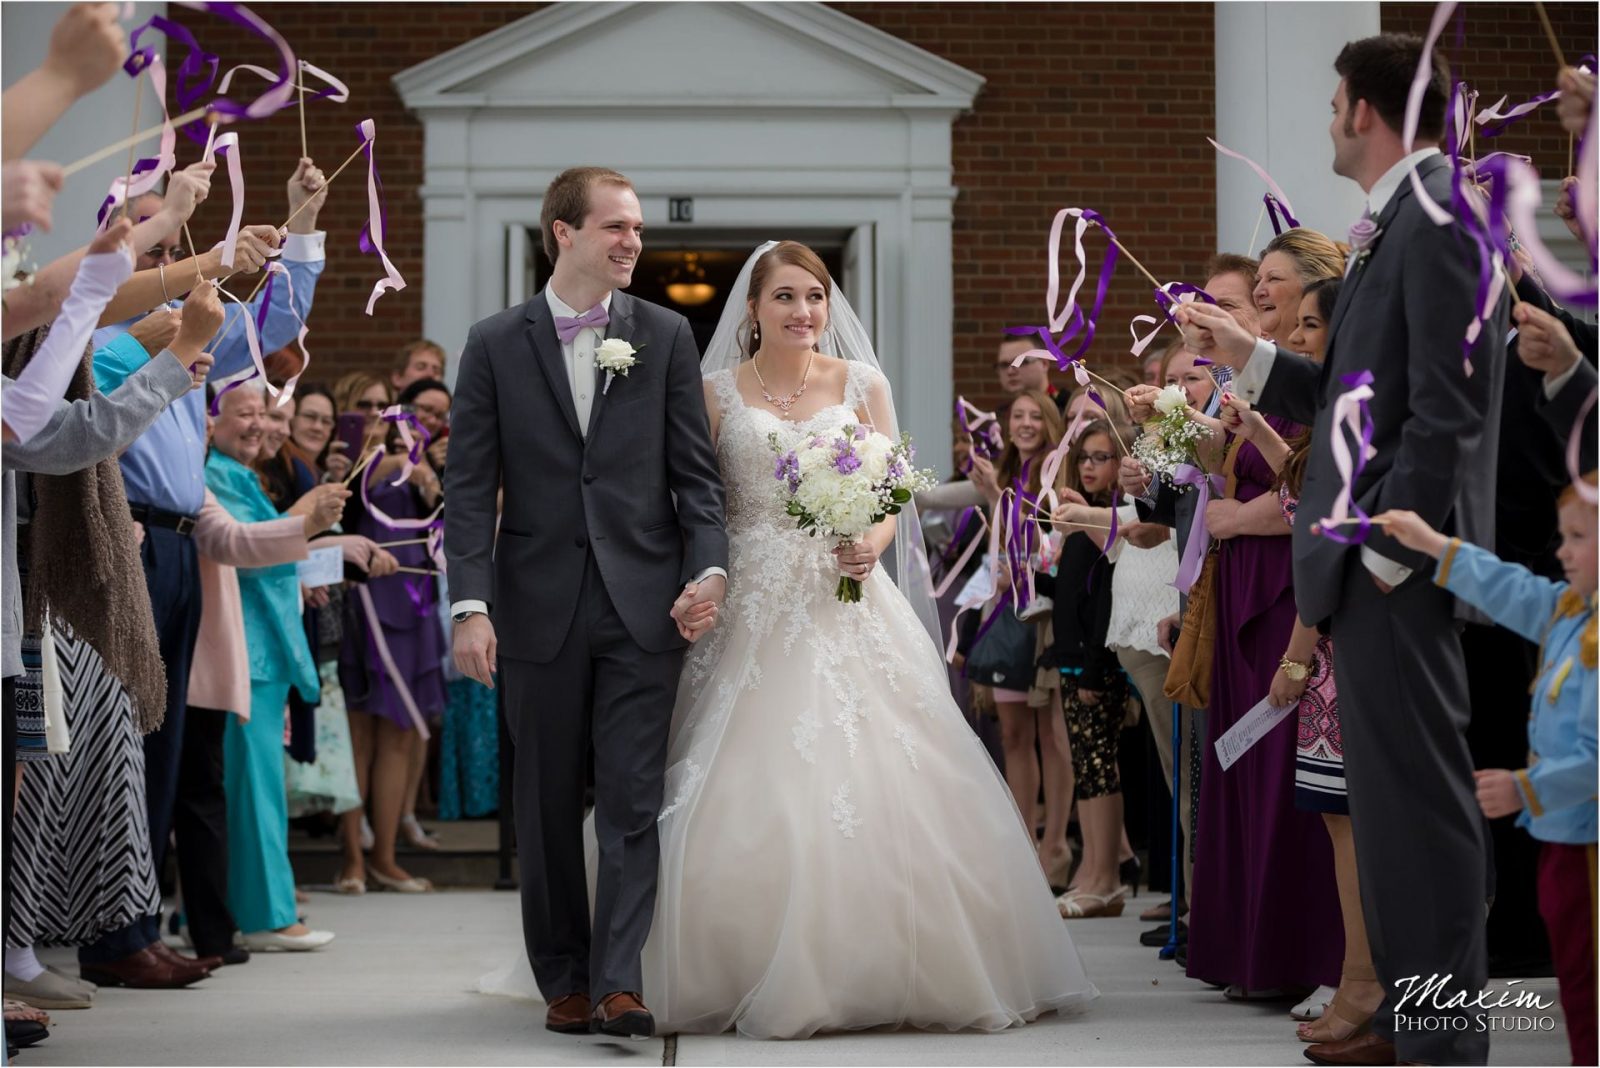 Anderson Hills UMC, Cincinnati Wedding Photography, Wedding Ceremony, Bubble Exit